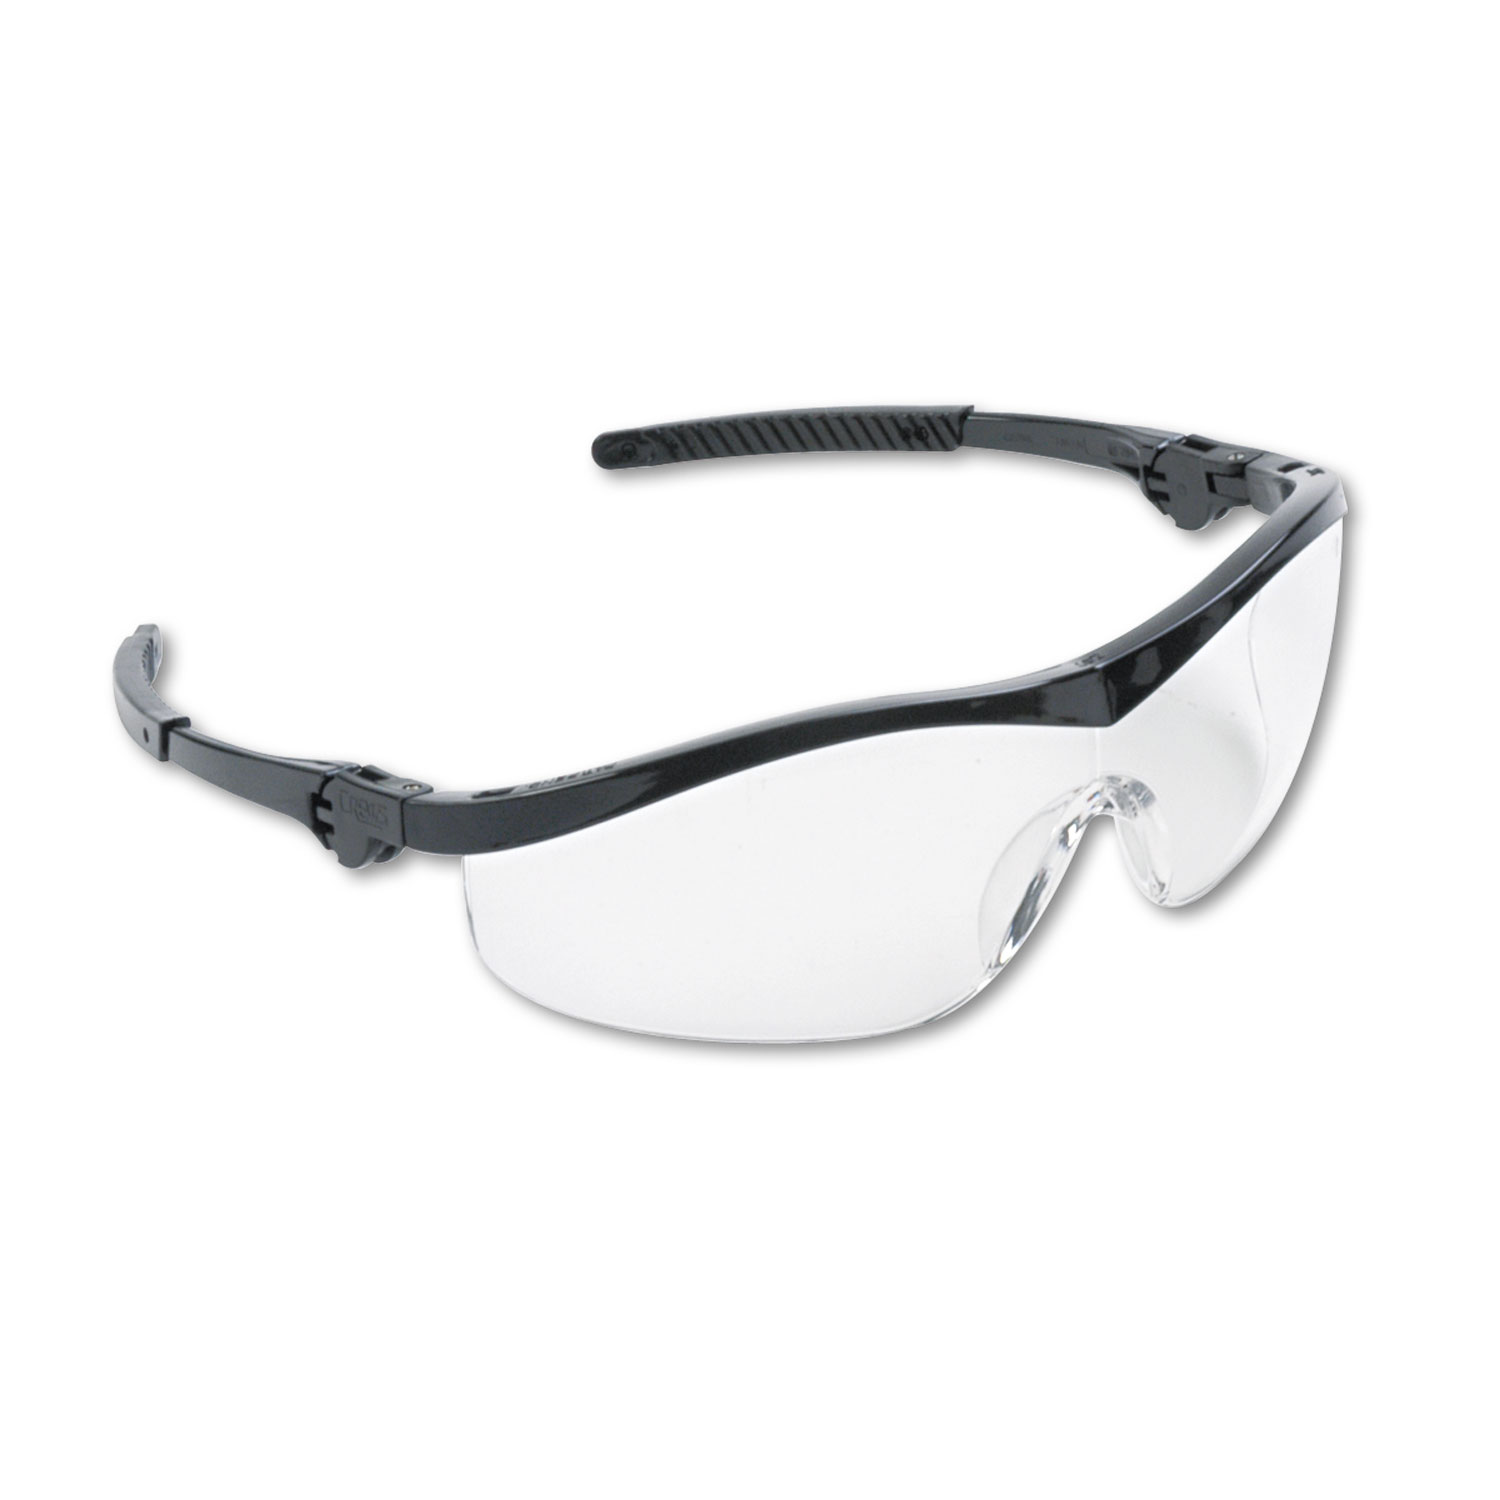  MCR Safety ST110 Storm Wraparound Safety Glasses, Black Nylon Frame, Clear Lens, 12/Box (CRWST110) 